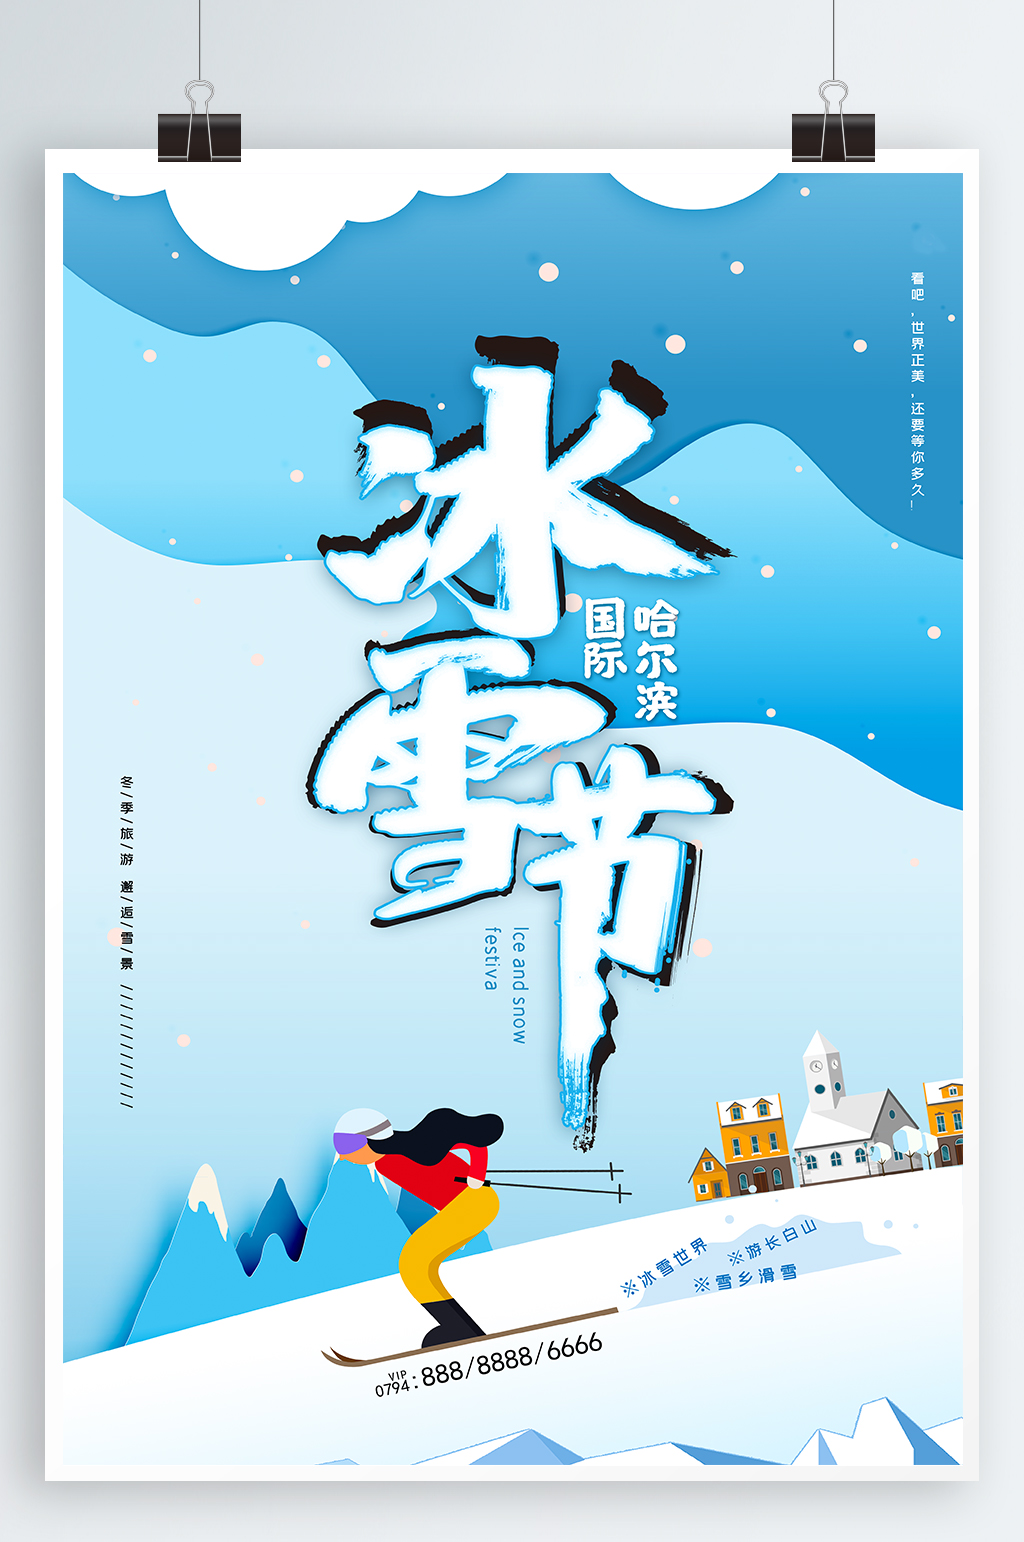 哈尔滨国际冰雪节海报立即下载哈尔滨国际冰雪节滑雪创意海报哈尔滨